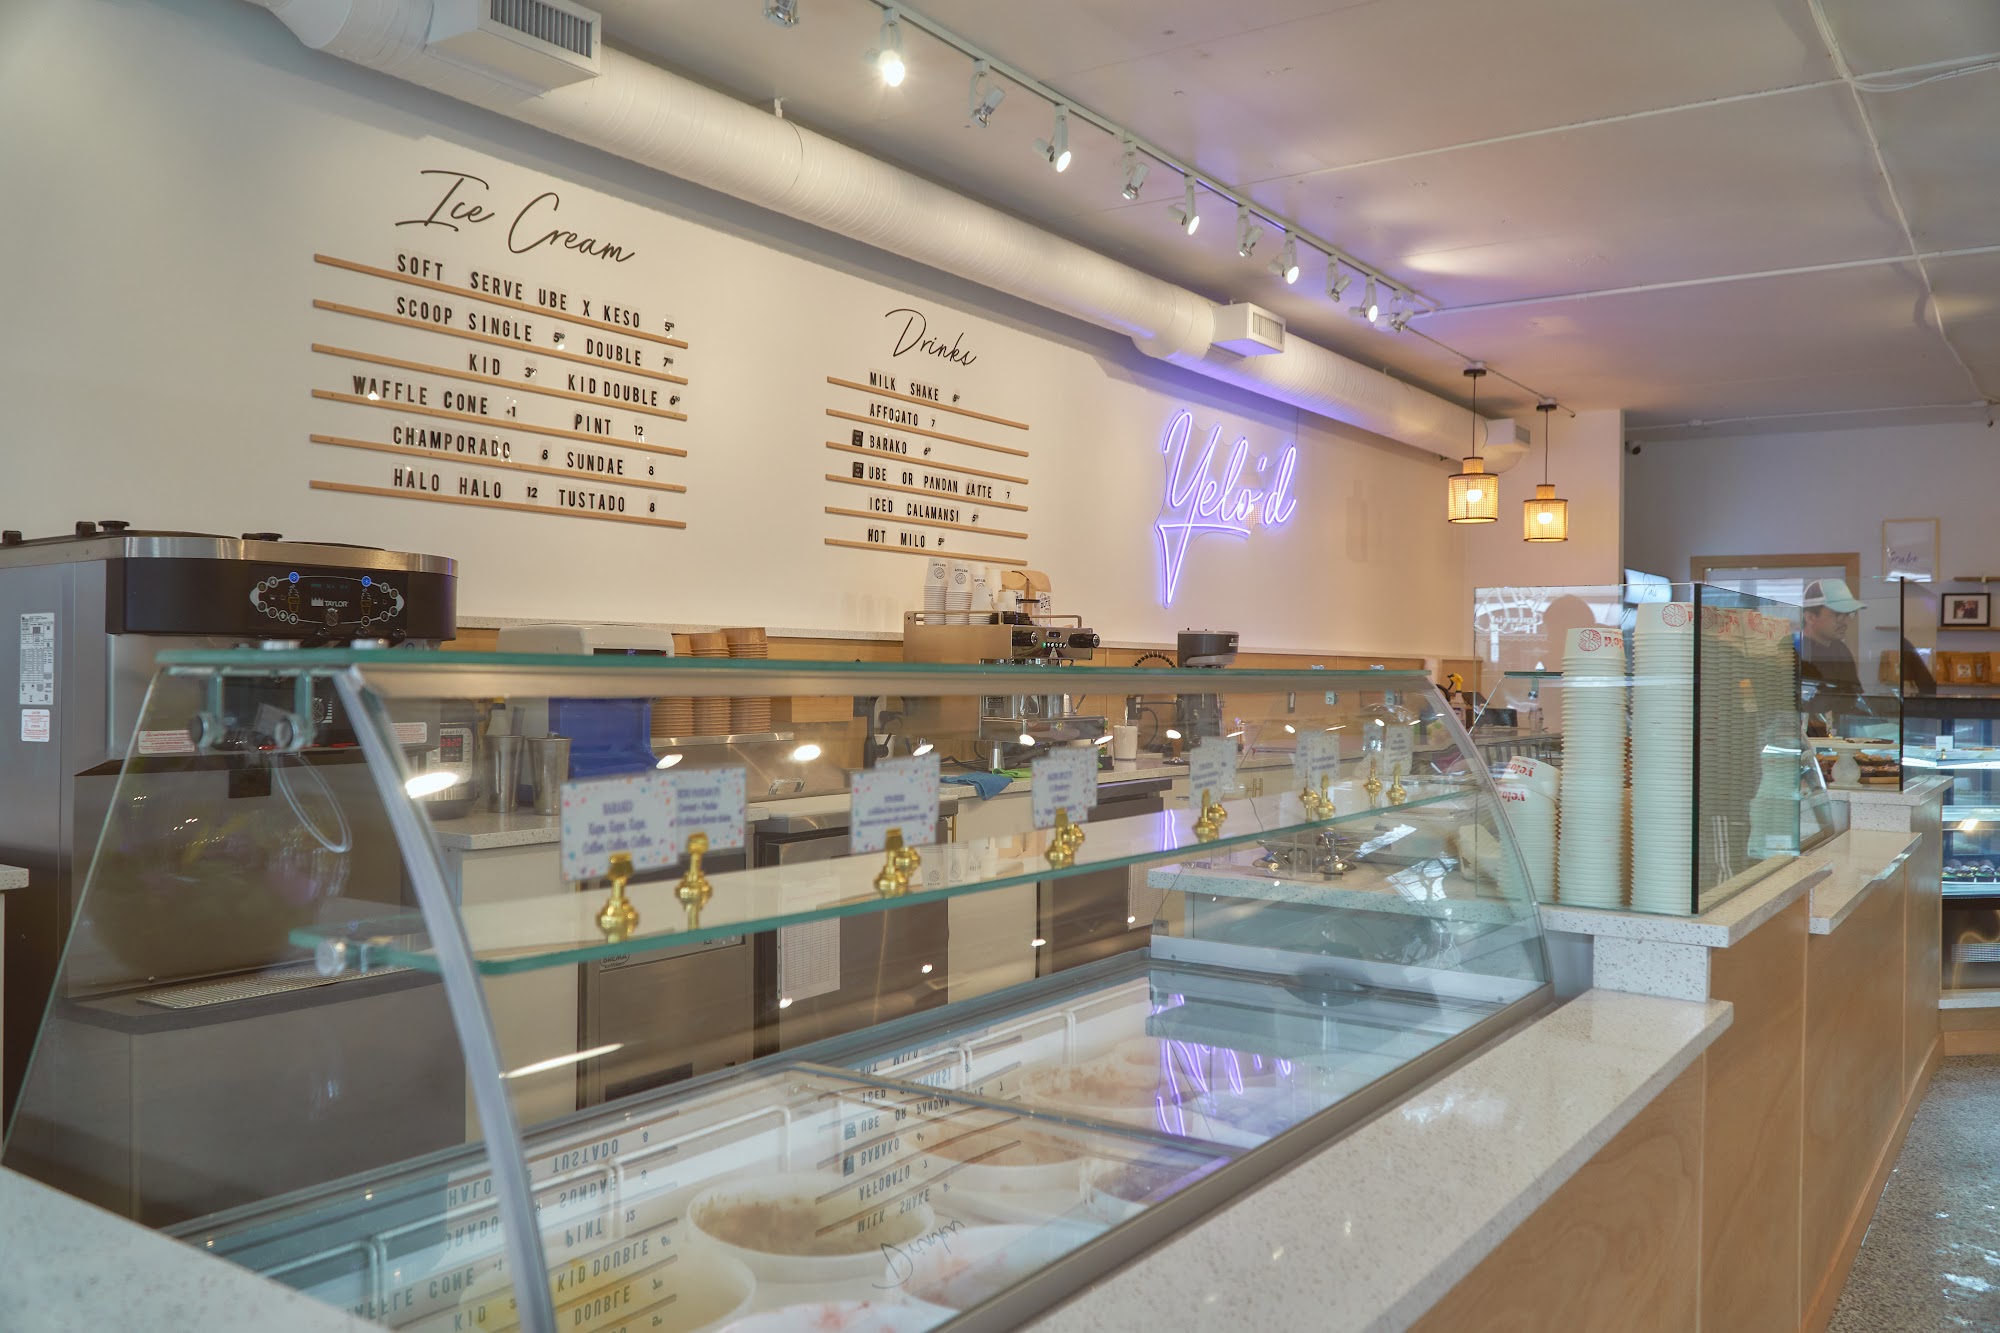 Yelo'd Ice Cream & Bake Shoppe